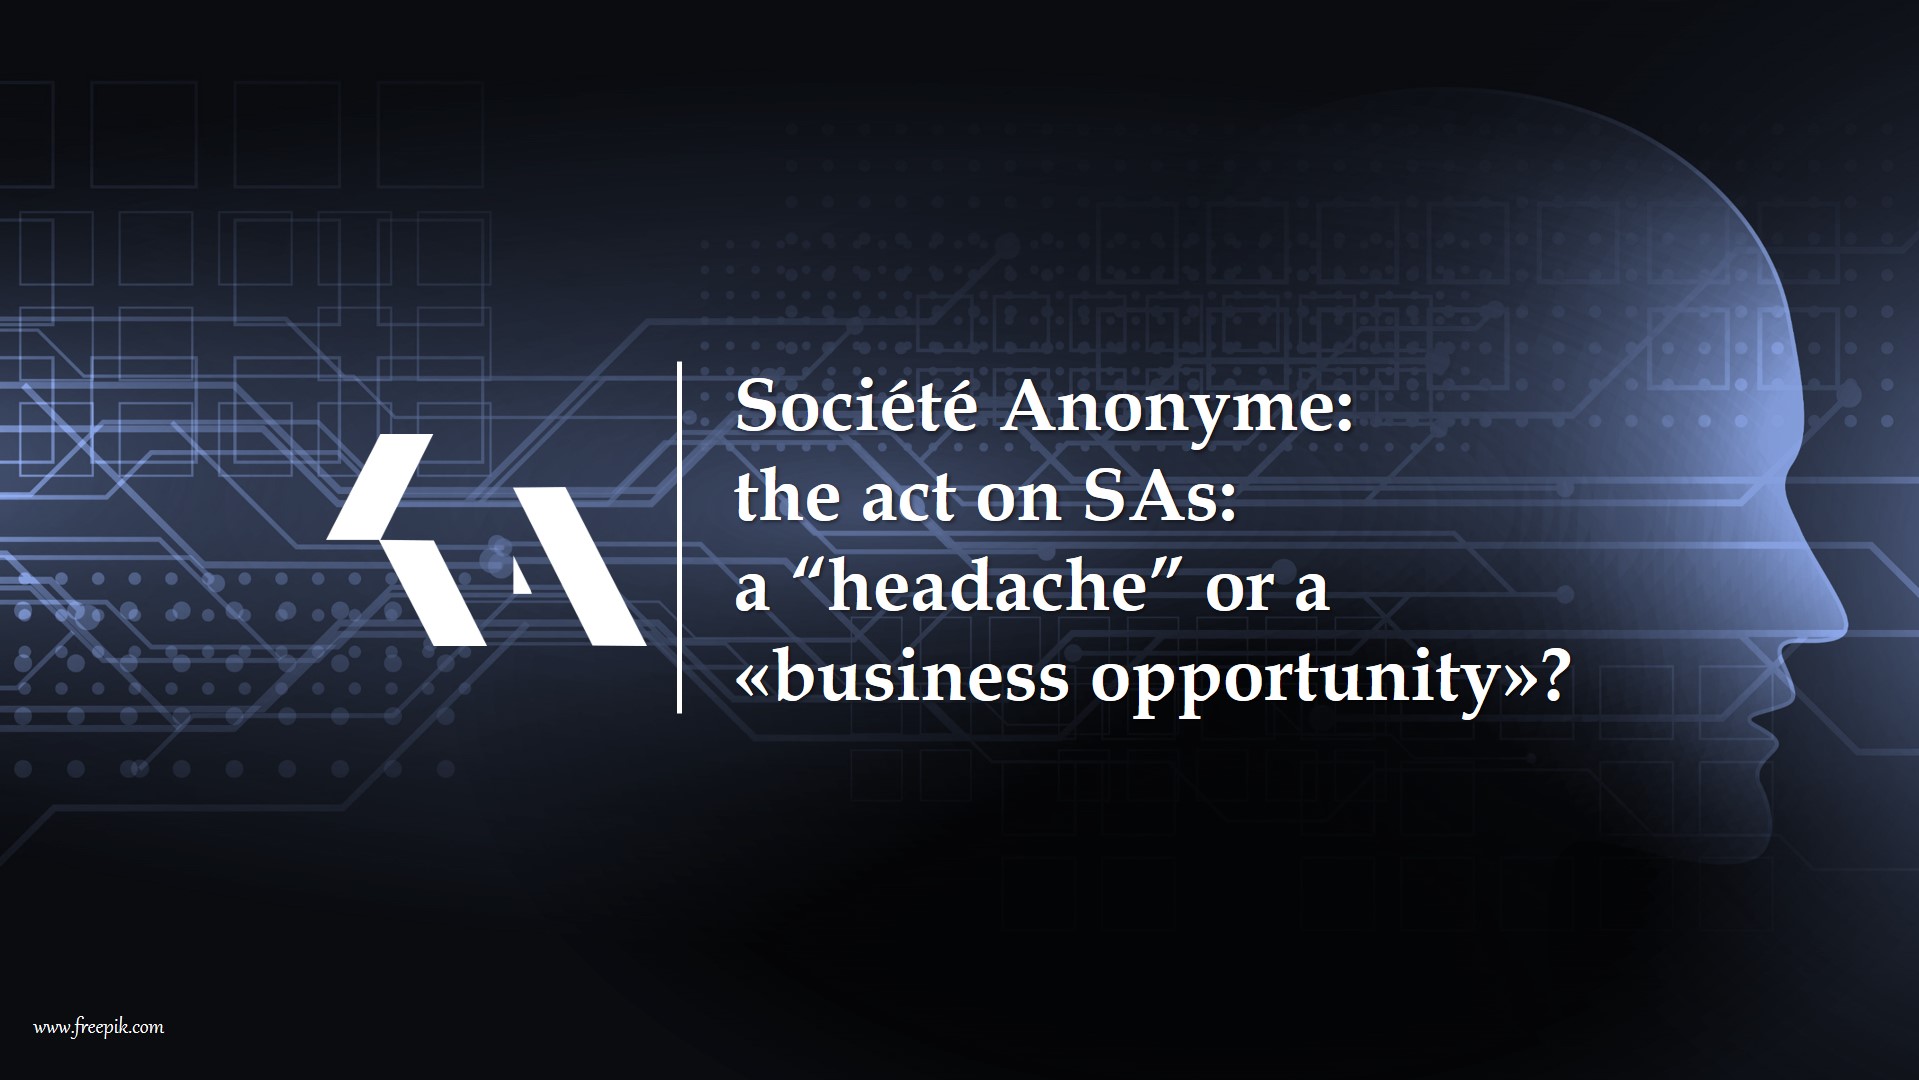 Société Anonyme. The new act on SAs: “headache” or «business opportunity»?